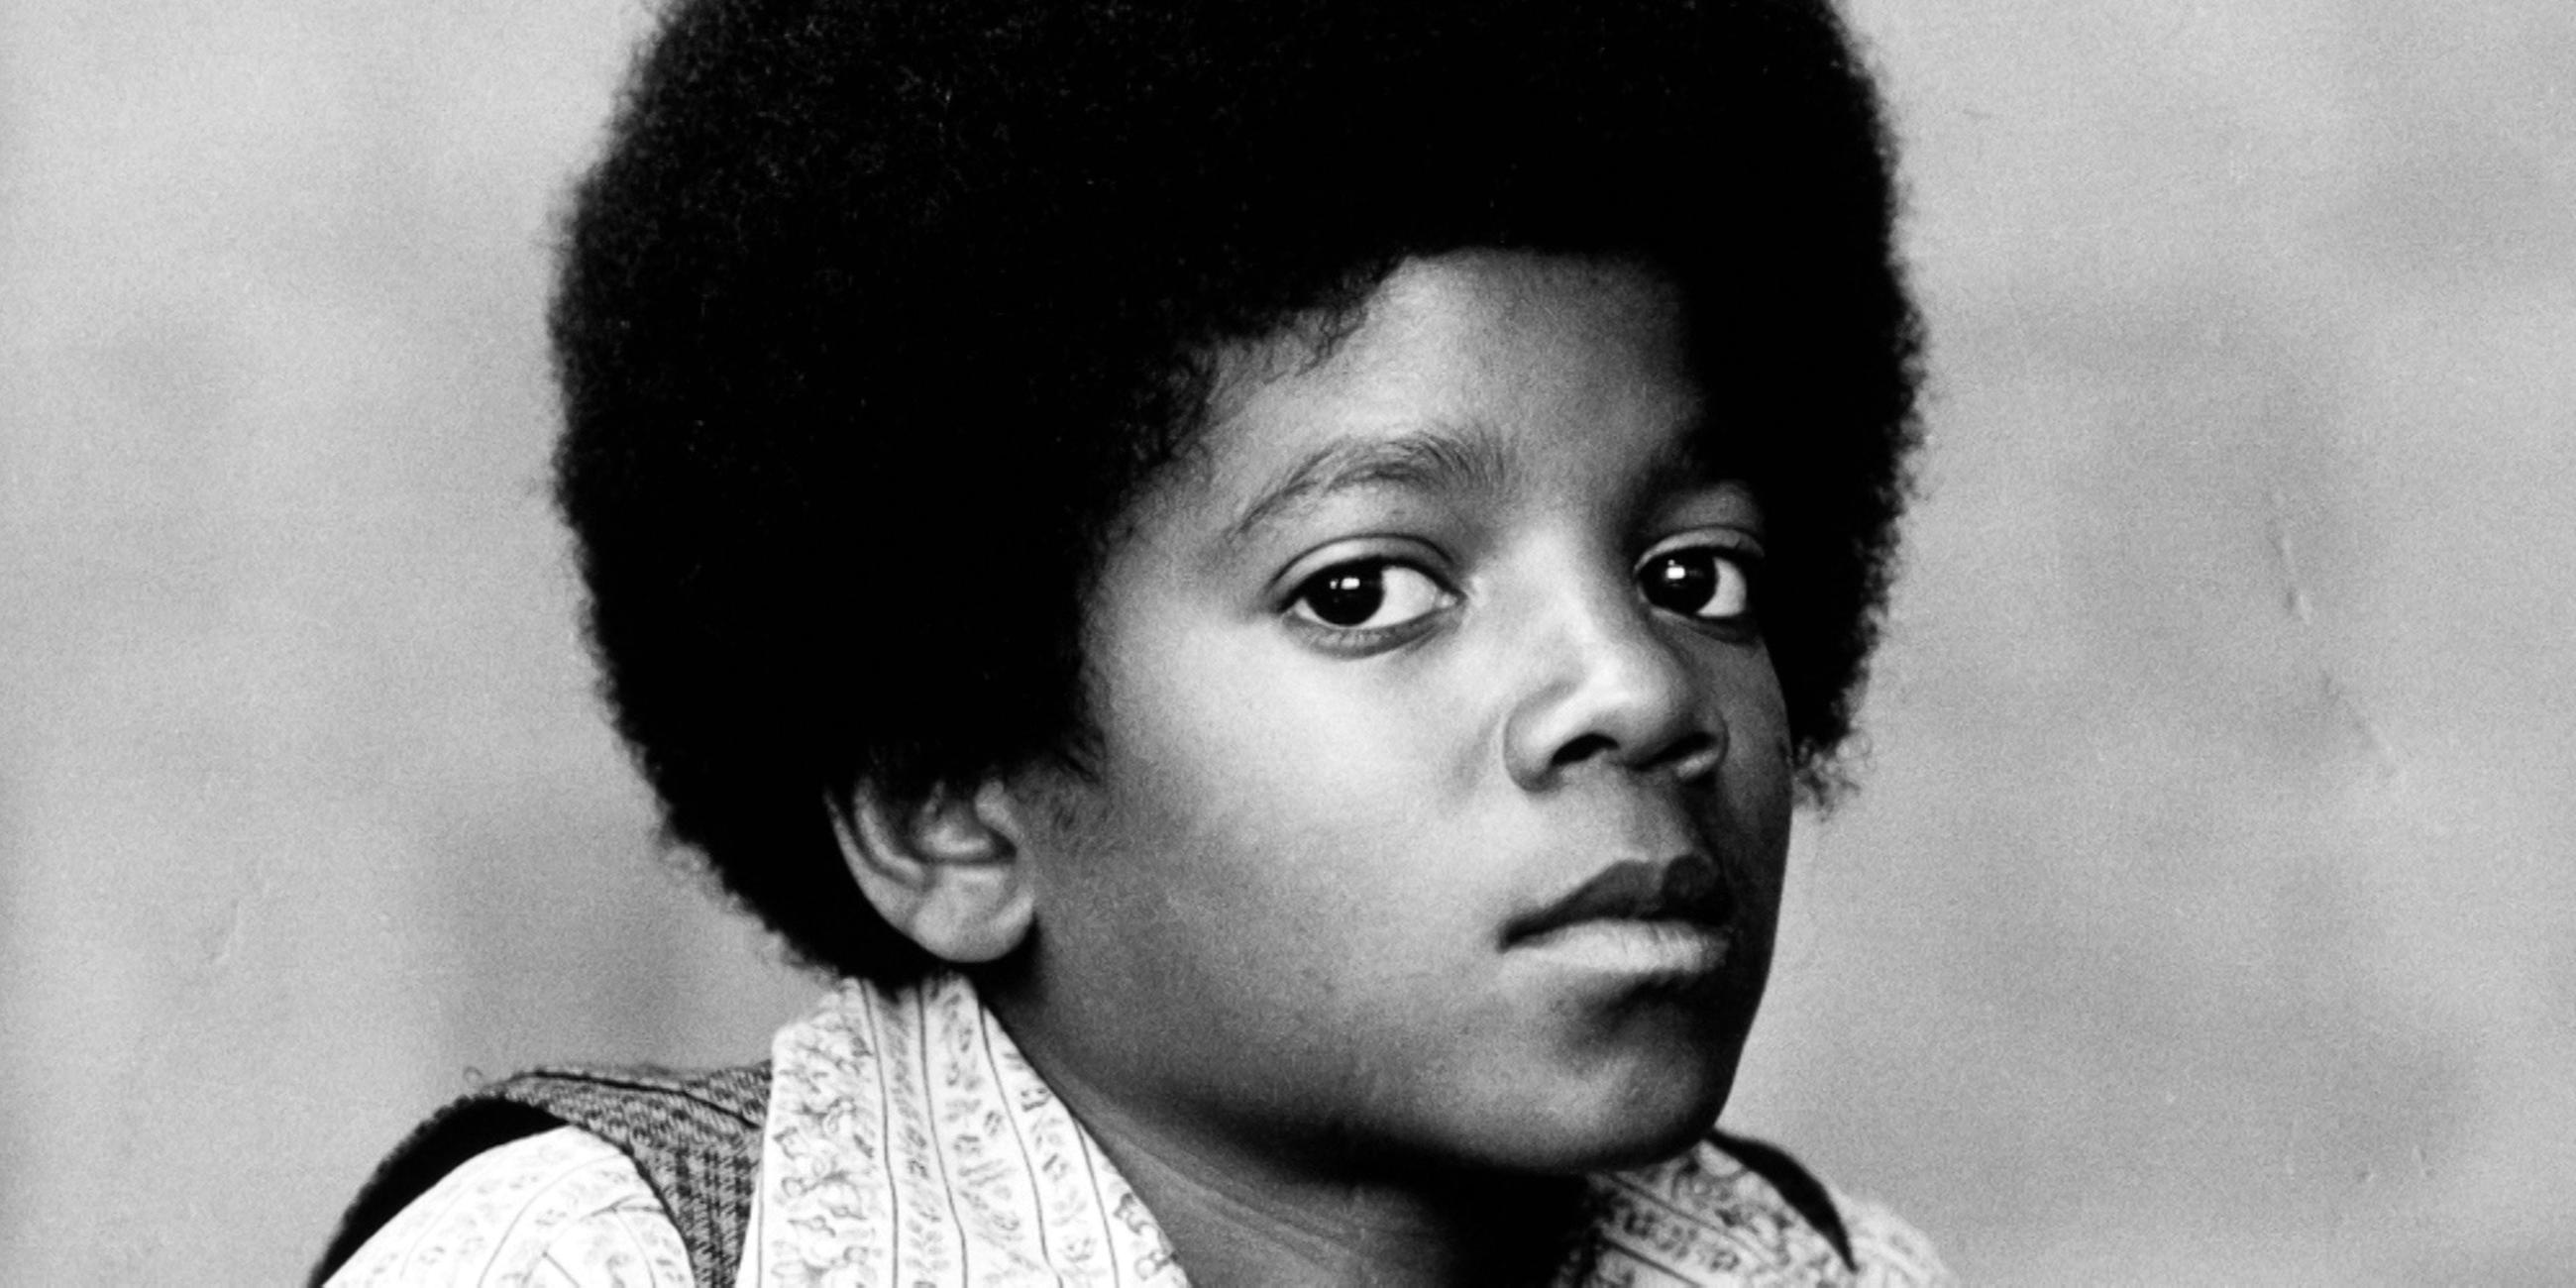  Schwarz-weißes Portraitfoto von Michael Jackson als Kind. Er blickt mit offenen Augen in die Kamera.